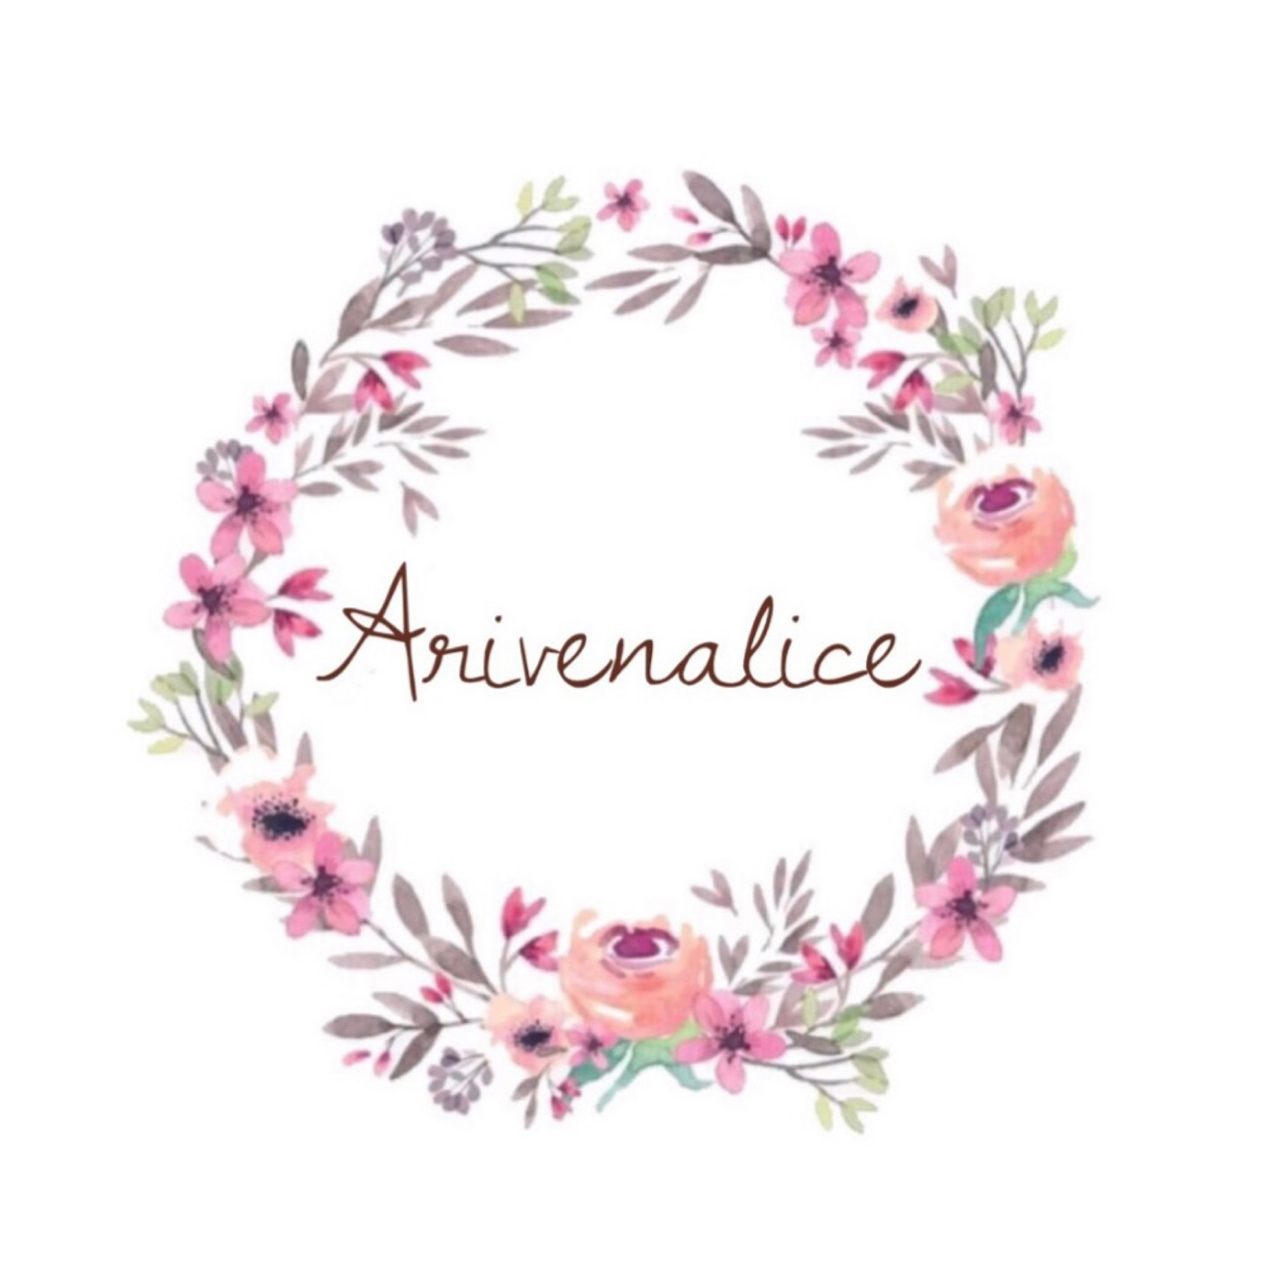 Arivenalice - アリヴェナリチェ